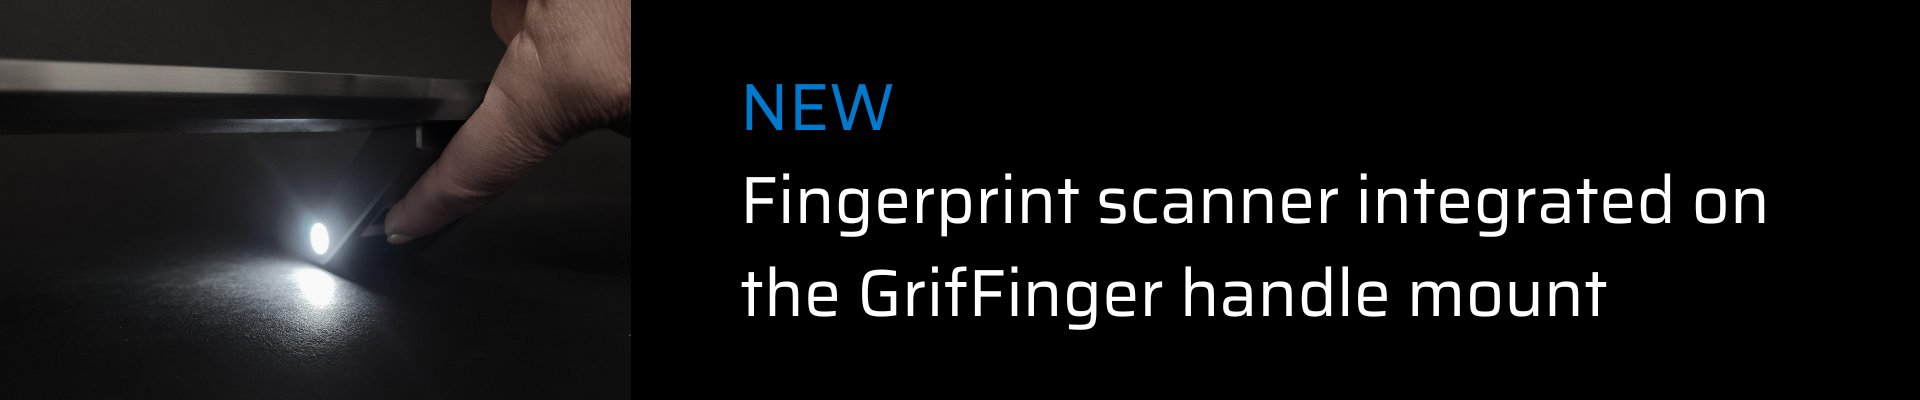 GrifFinger-fingerprint scanner on a handle mount-Griffing